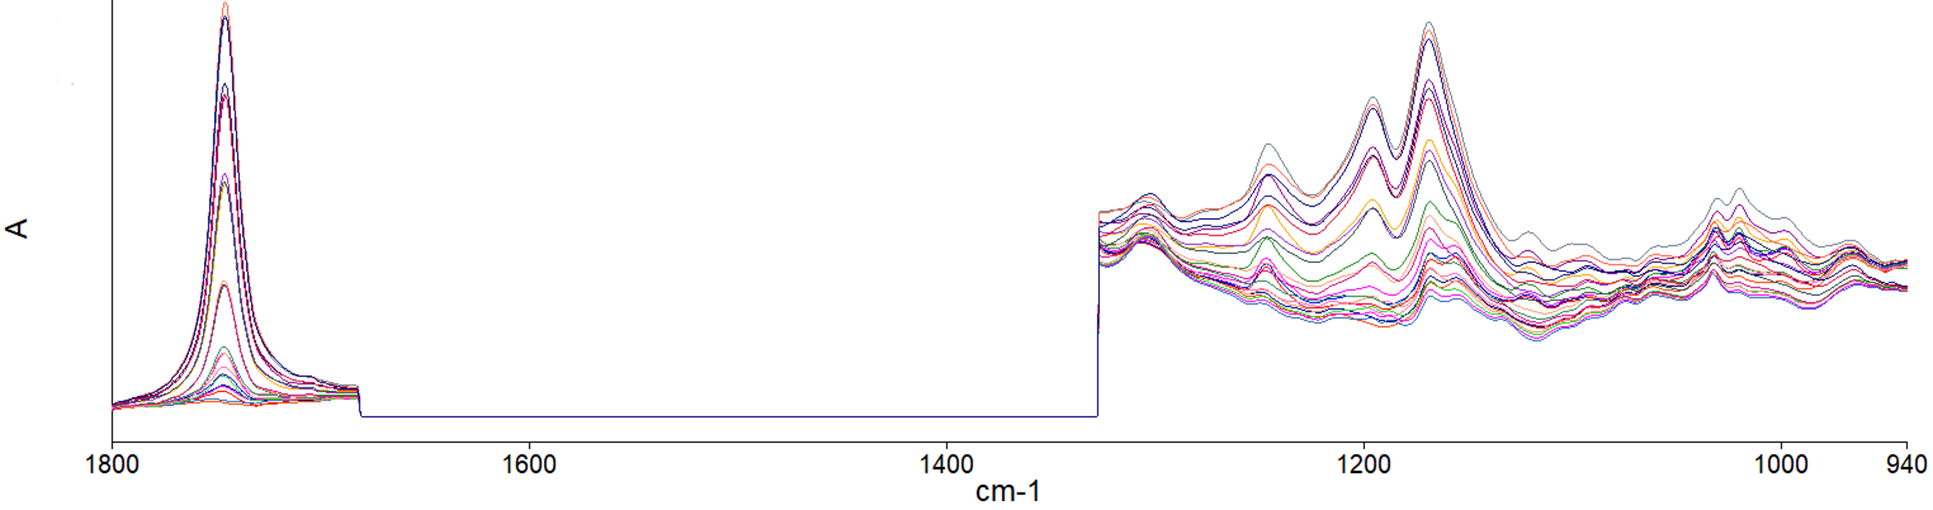 Spectral regions of interest for the low concentration calibration model (0 - 10 %v/v biodiesel).